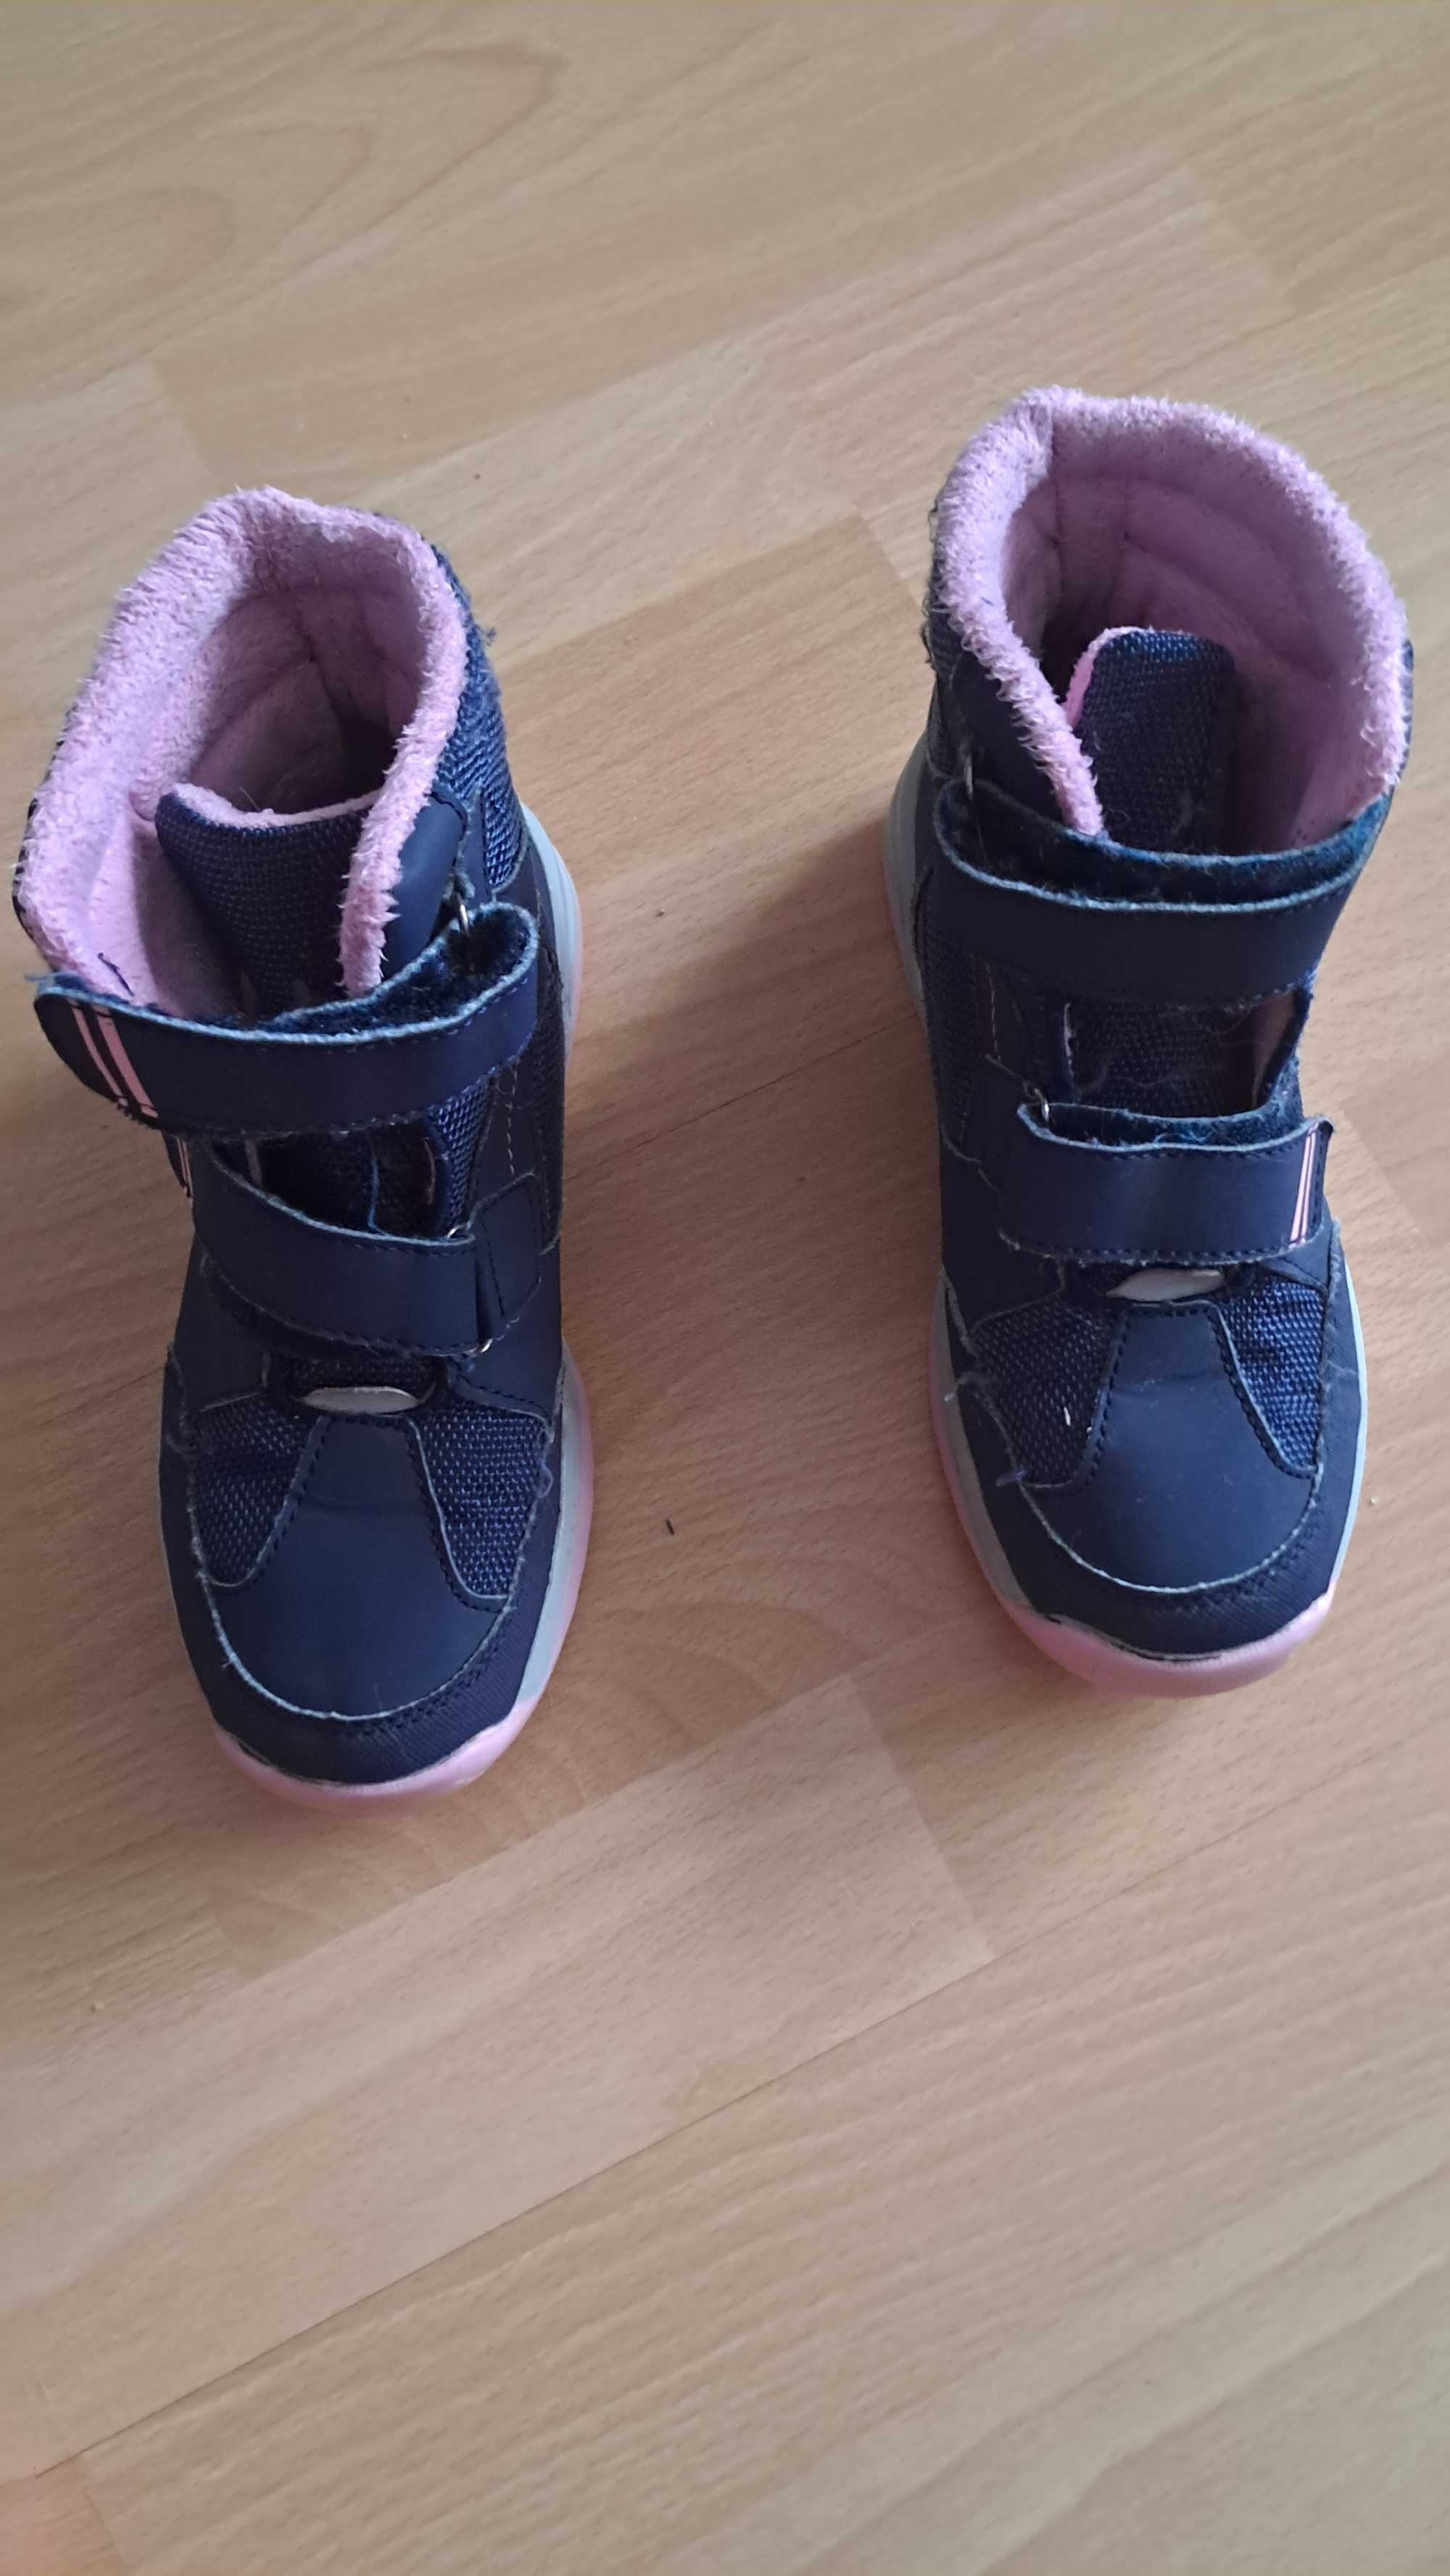 Buty sniegowce  dla dziewczynki rozmiar 34-35